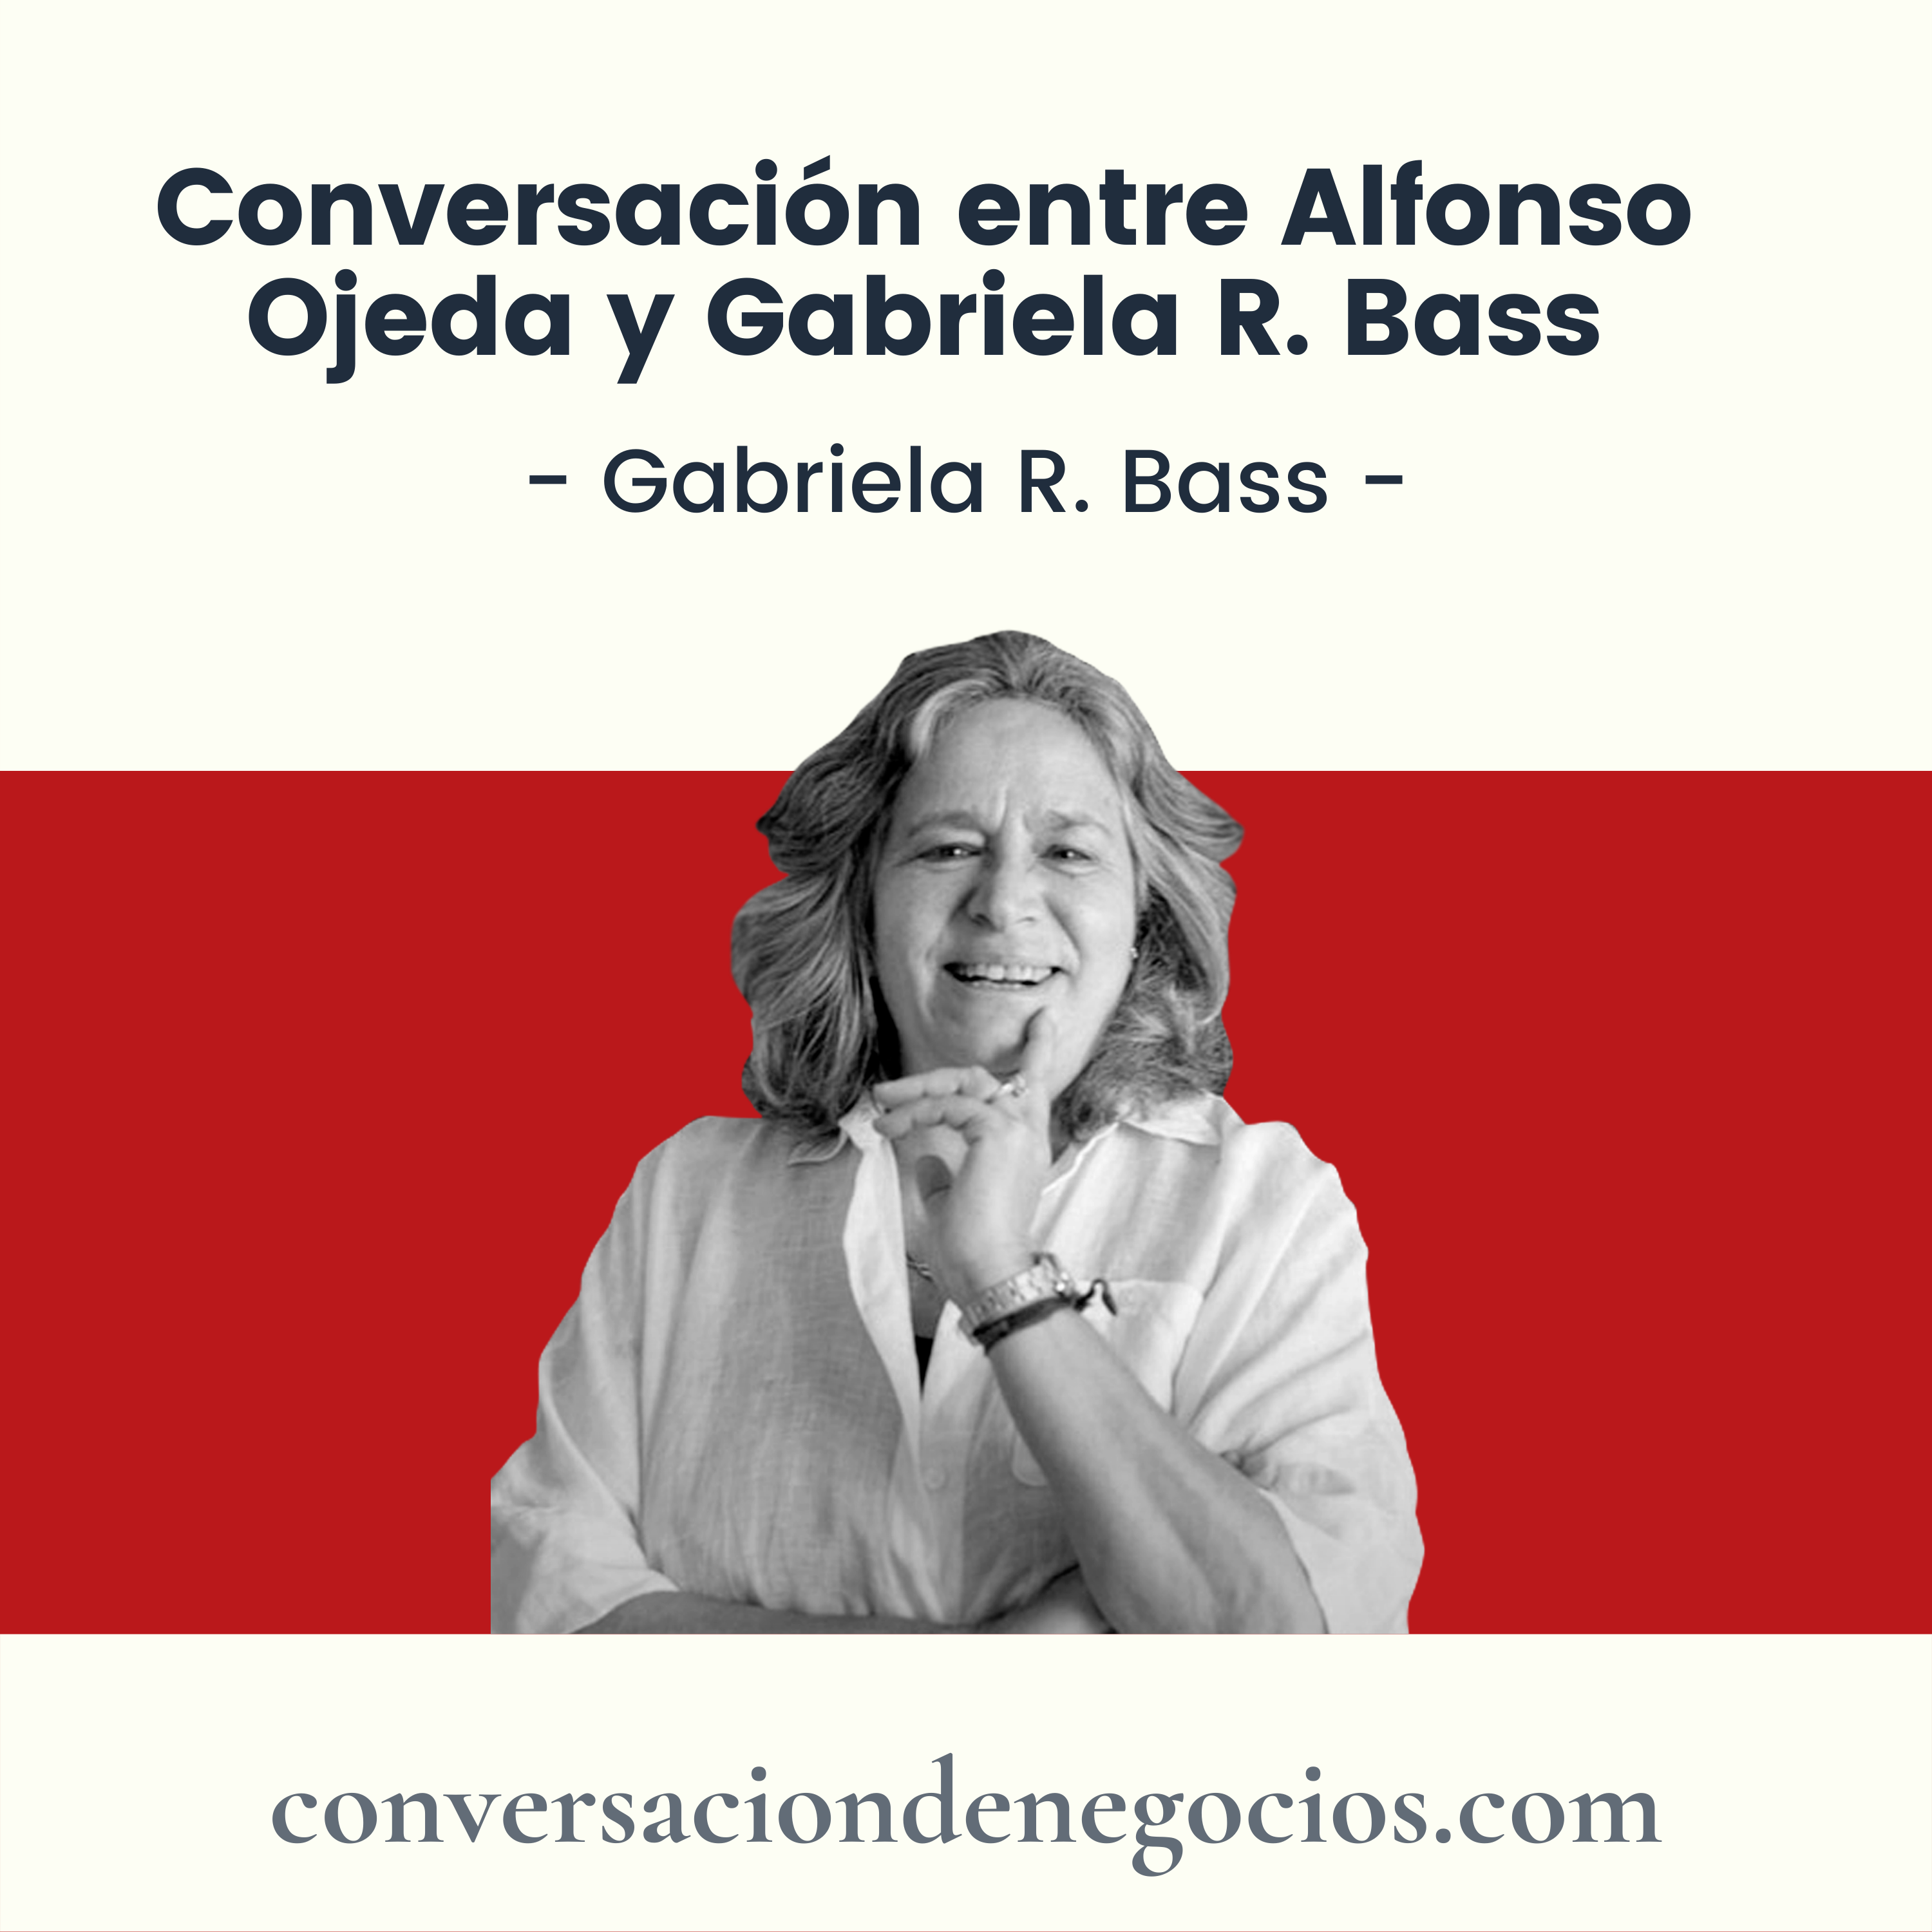 Conversación entre Alfonso Ojeda y Gabriela R. Bass